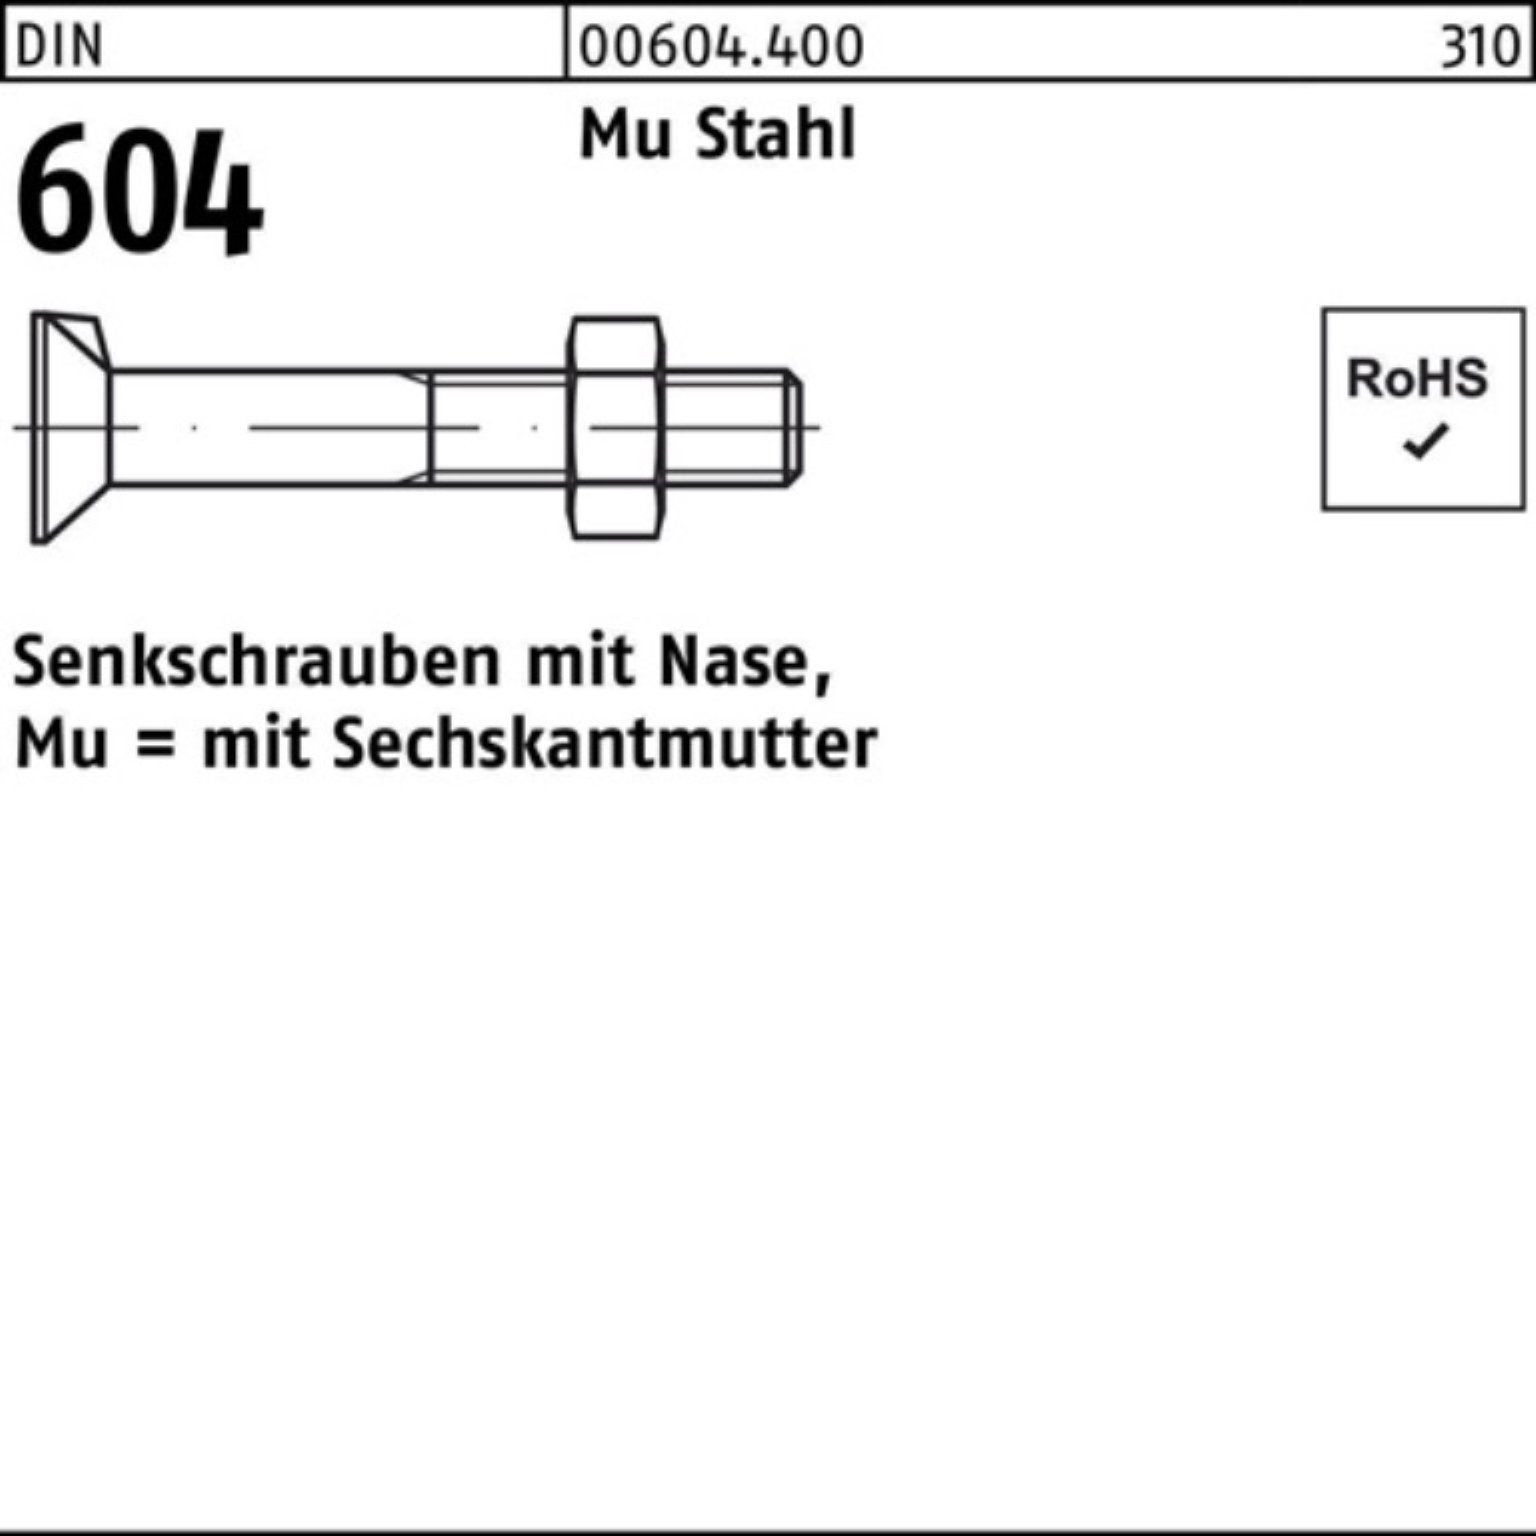 Reyher Senkschraube 100er 5 80 Nase/6-ktmutter Pack 4.6 Stahl M12x DIN Mu Senkschraube 604